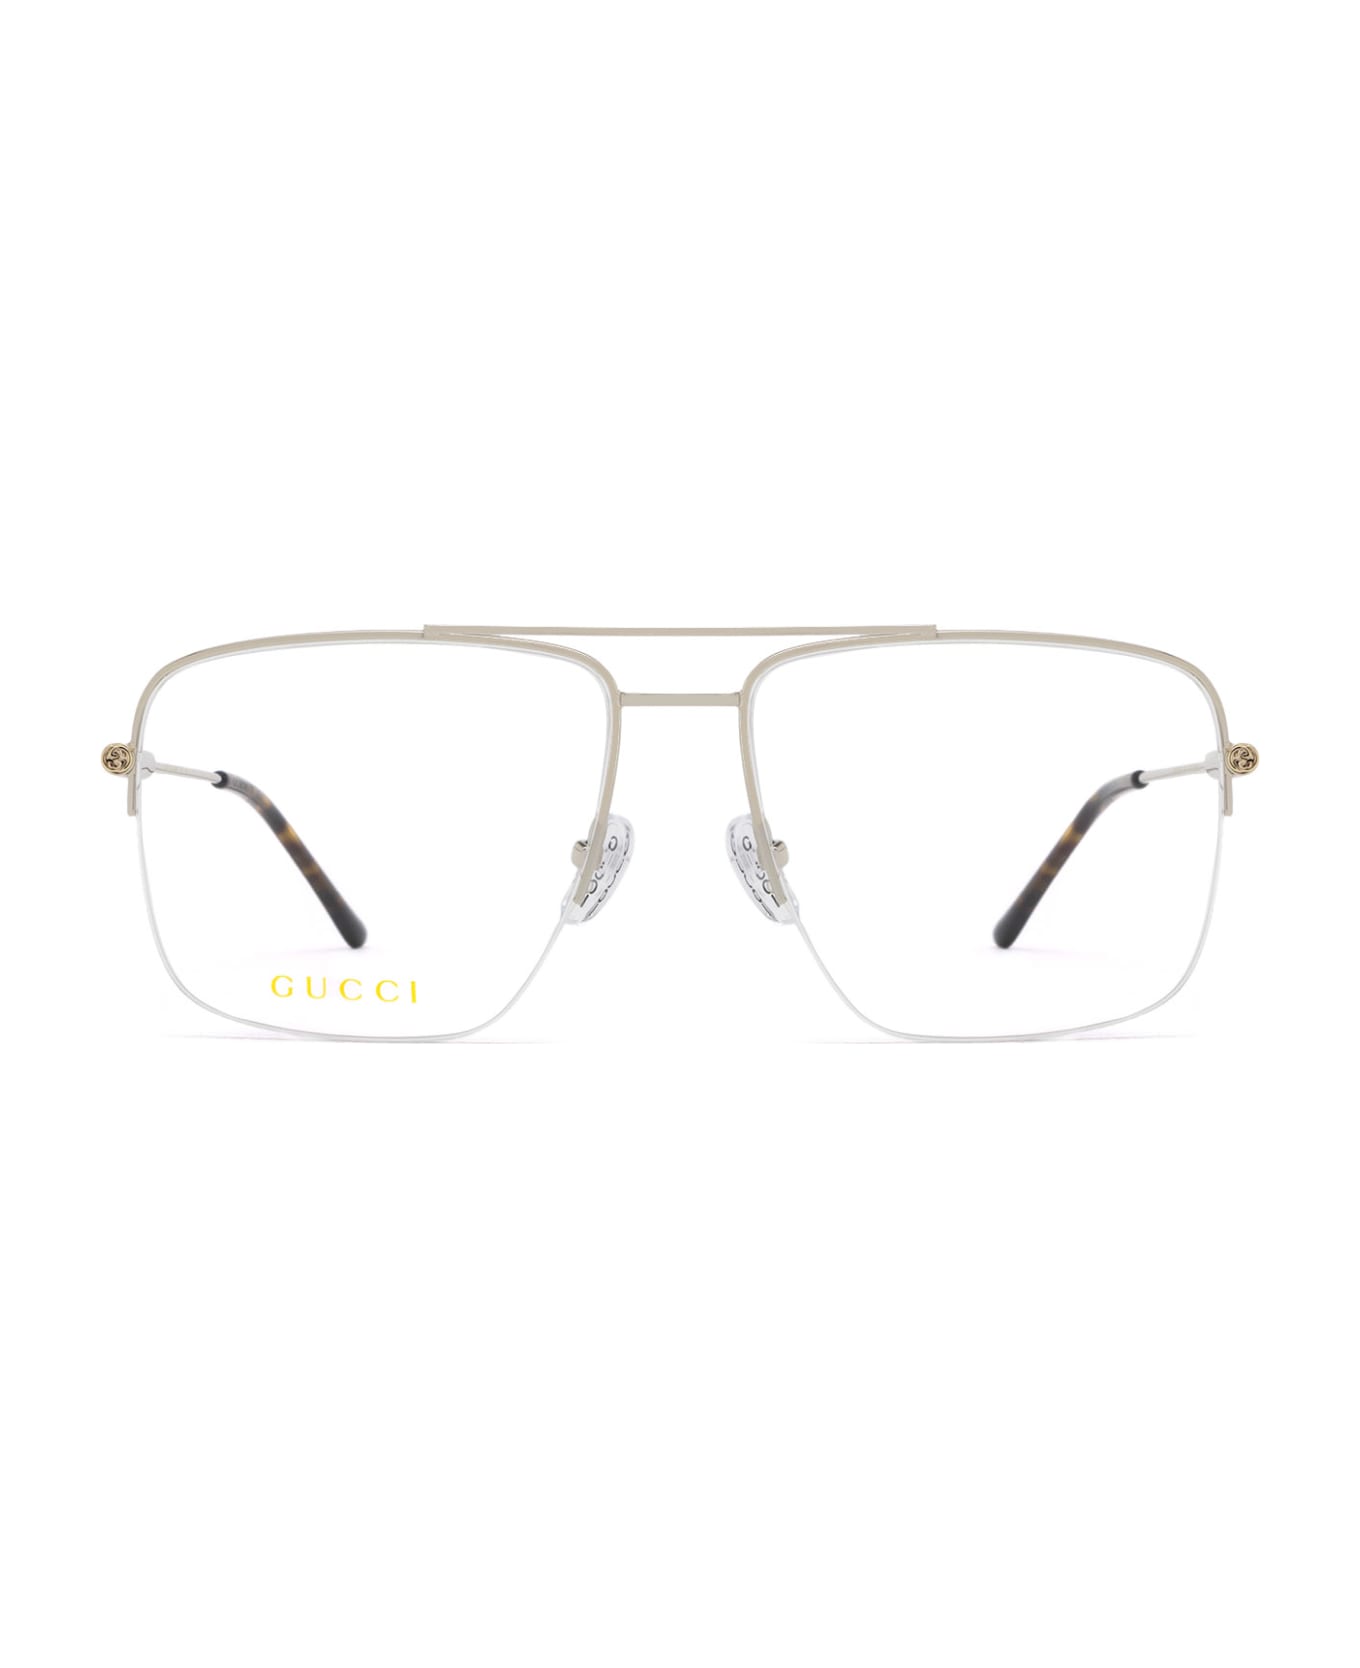 Gucci Eyewear Gg1415o Silver Glasses - Silver アイウェア